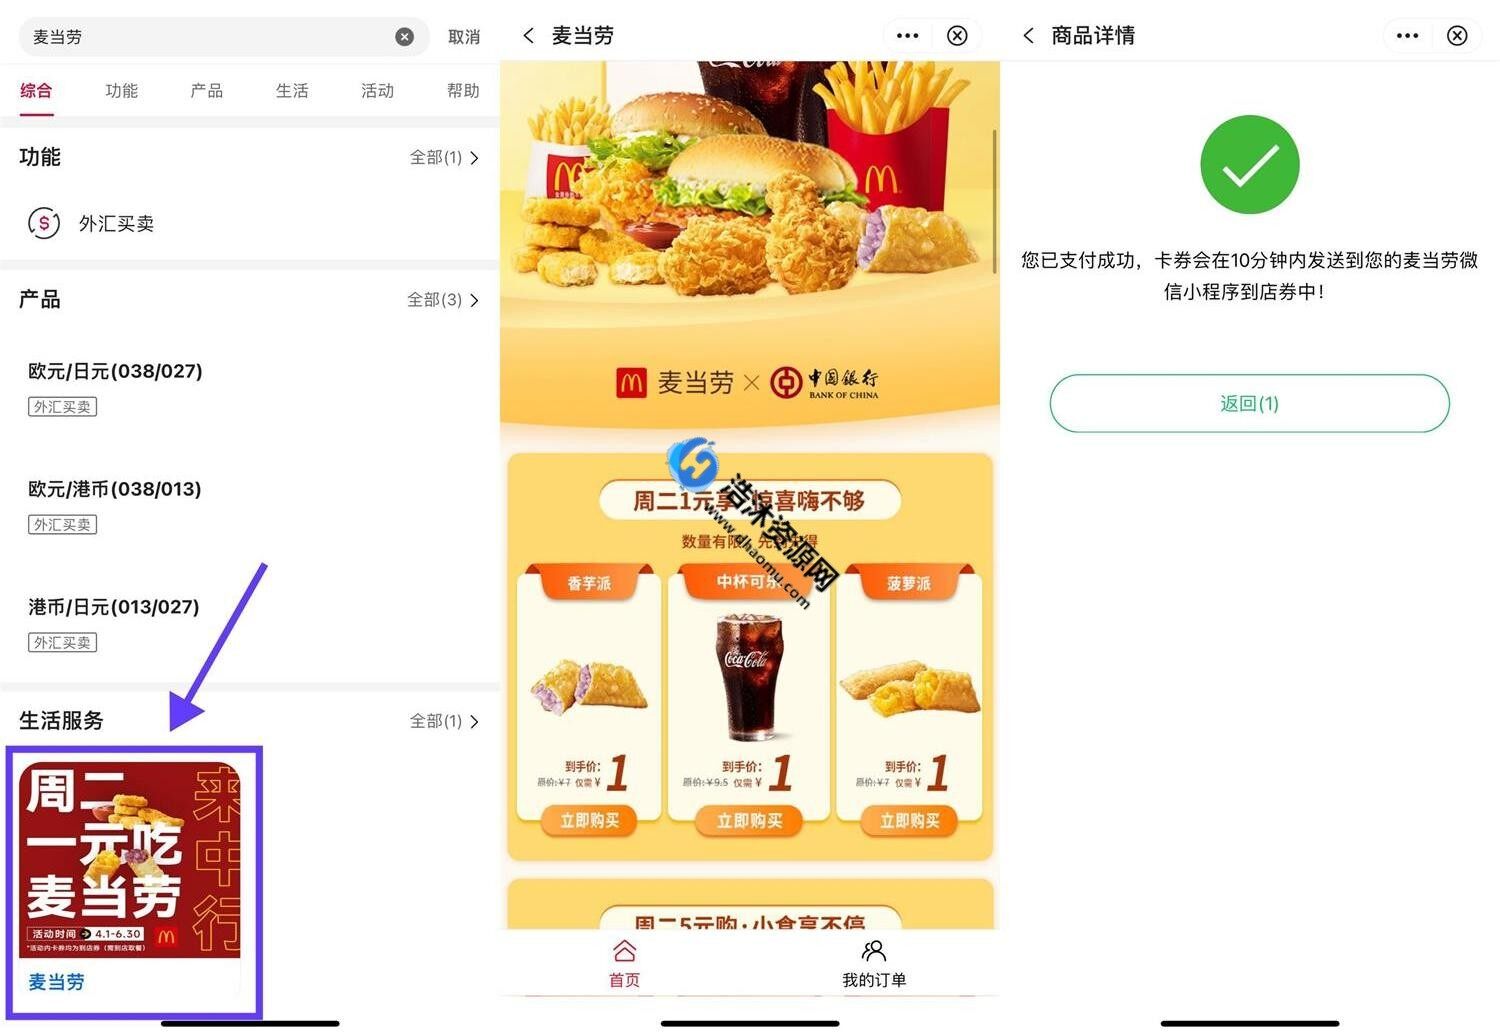 中国银行周二1元享买麦当劳实物券